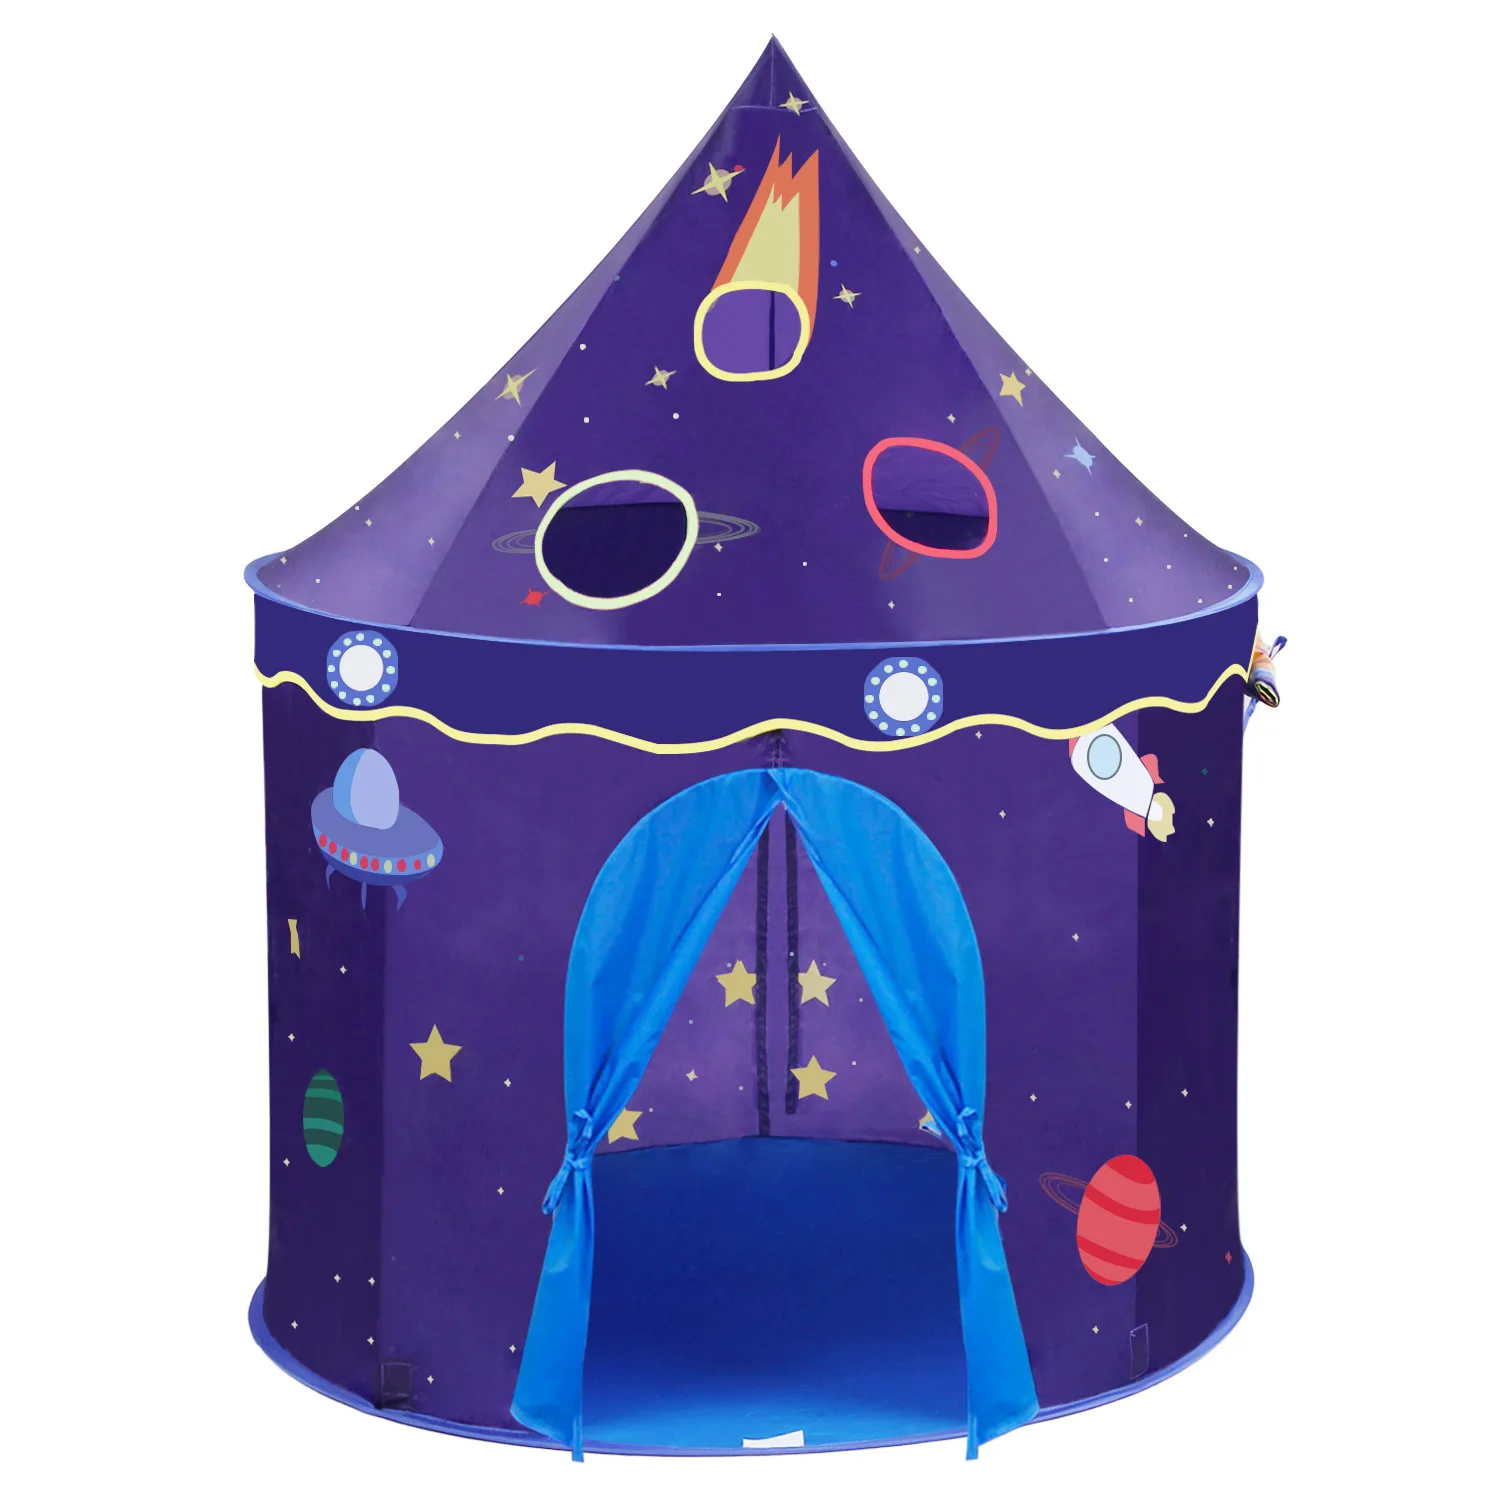 WZFQ детская индийская палатка игровая игрушка домик детский сад палатка Круг Открытый шестиугольная палатка набор